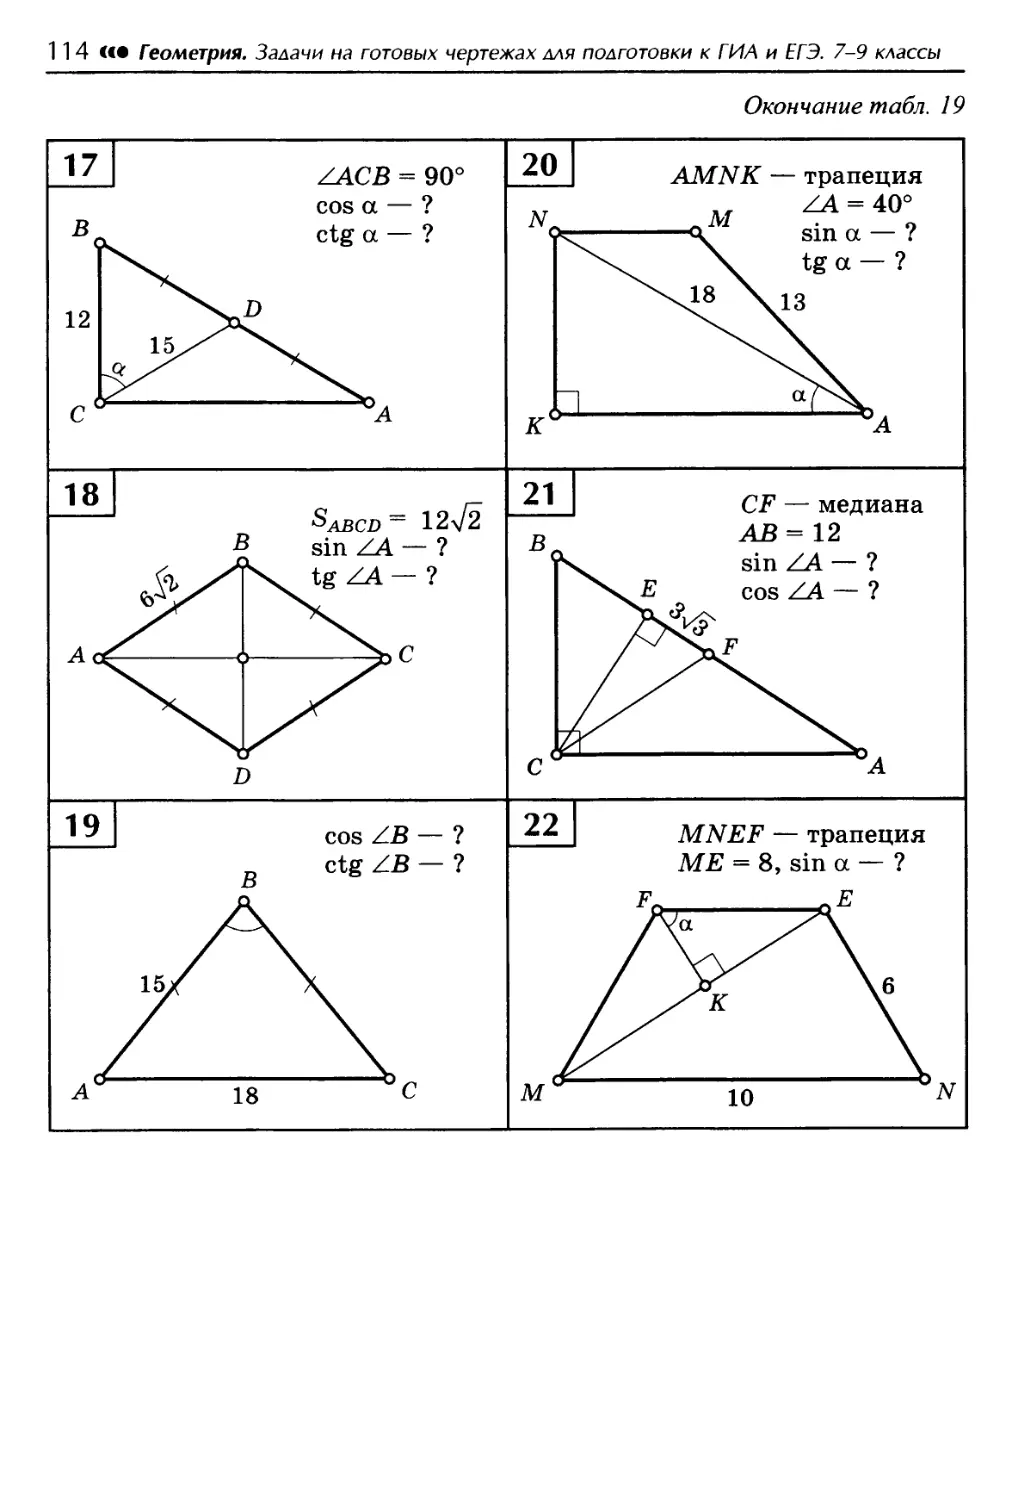 Решение прямоугольных треугольников по готовым чертежам. Балаян 8 класс геометрия задачи на готовых чертежах. Задачи по геометрии на готовых чертежах 7-9 классы Атанасян. Задачи на готовых чертежах 7-9 класс геометрия Атанасян. Задачи на готовых чертежах тригонометрия 8 класс.